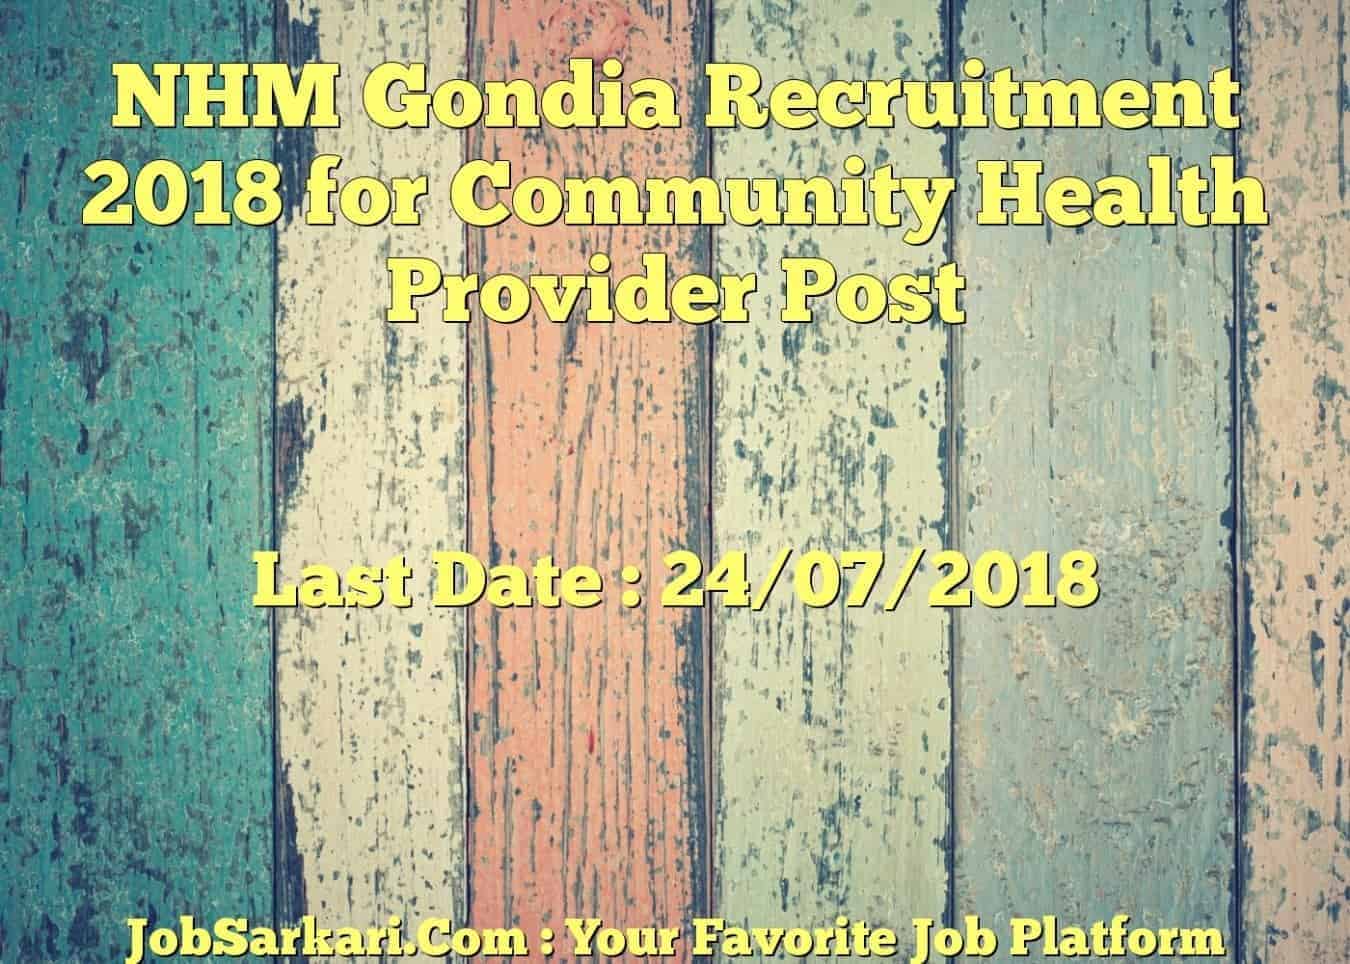 NHM Gondia Recruitment 2018 for Community Health Provider Post